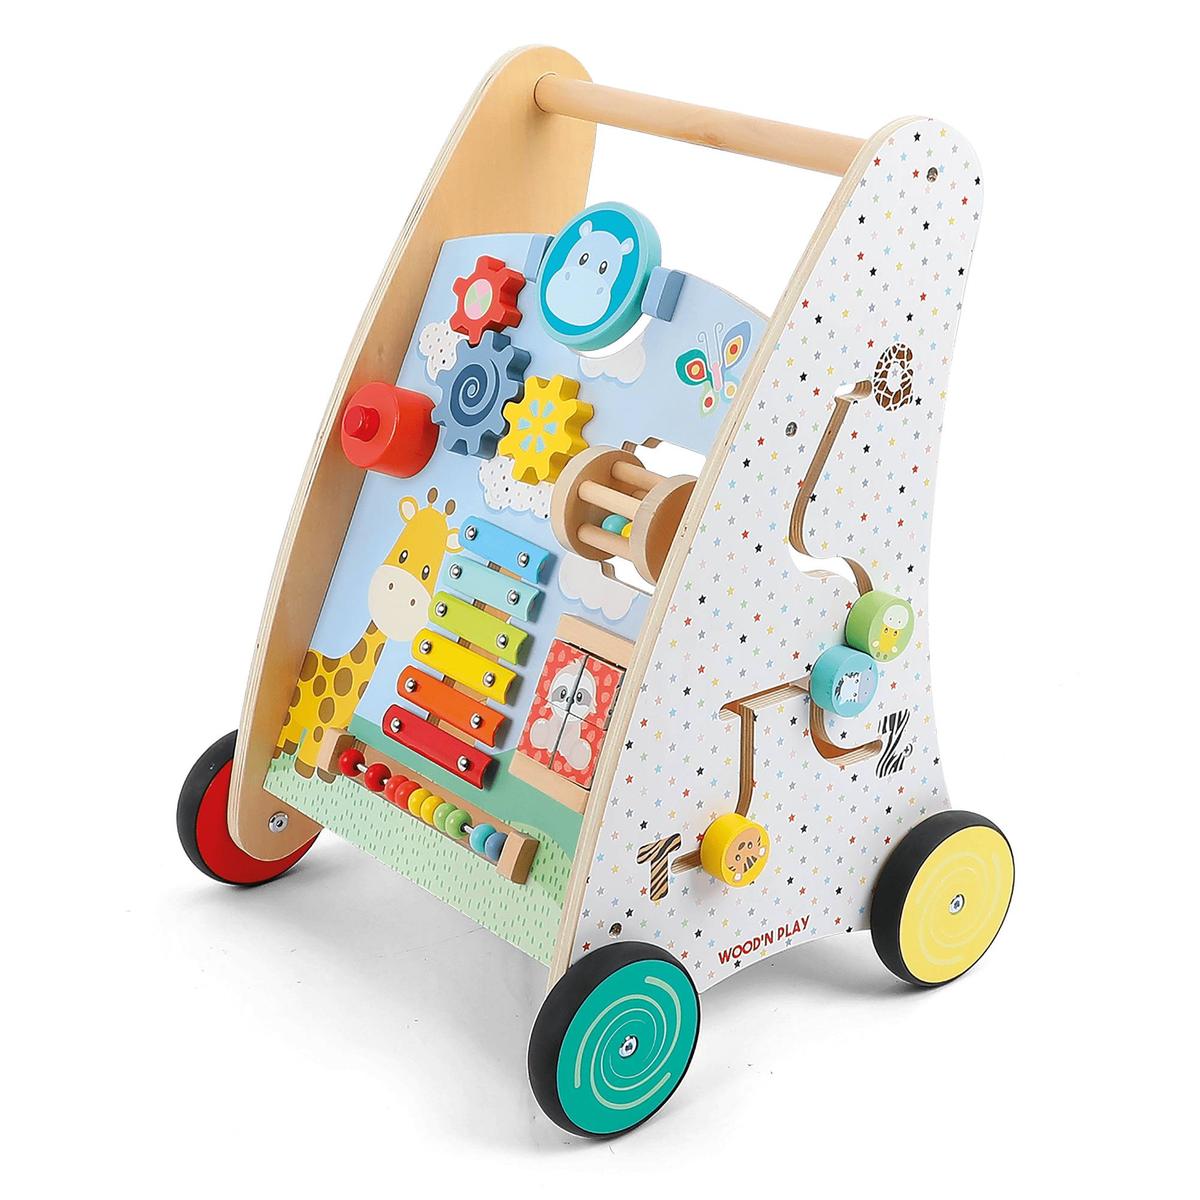 WoodnPlay - Andador de madeira com atividades | Imagination discovery |  Loja de brinquedos e videojogos Online Toysrus